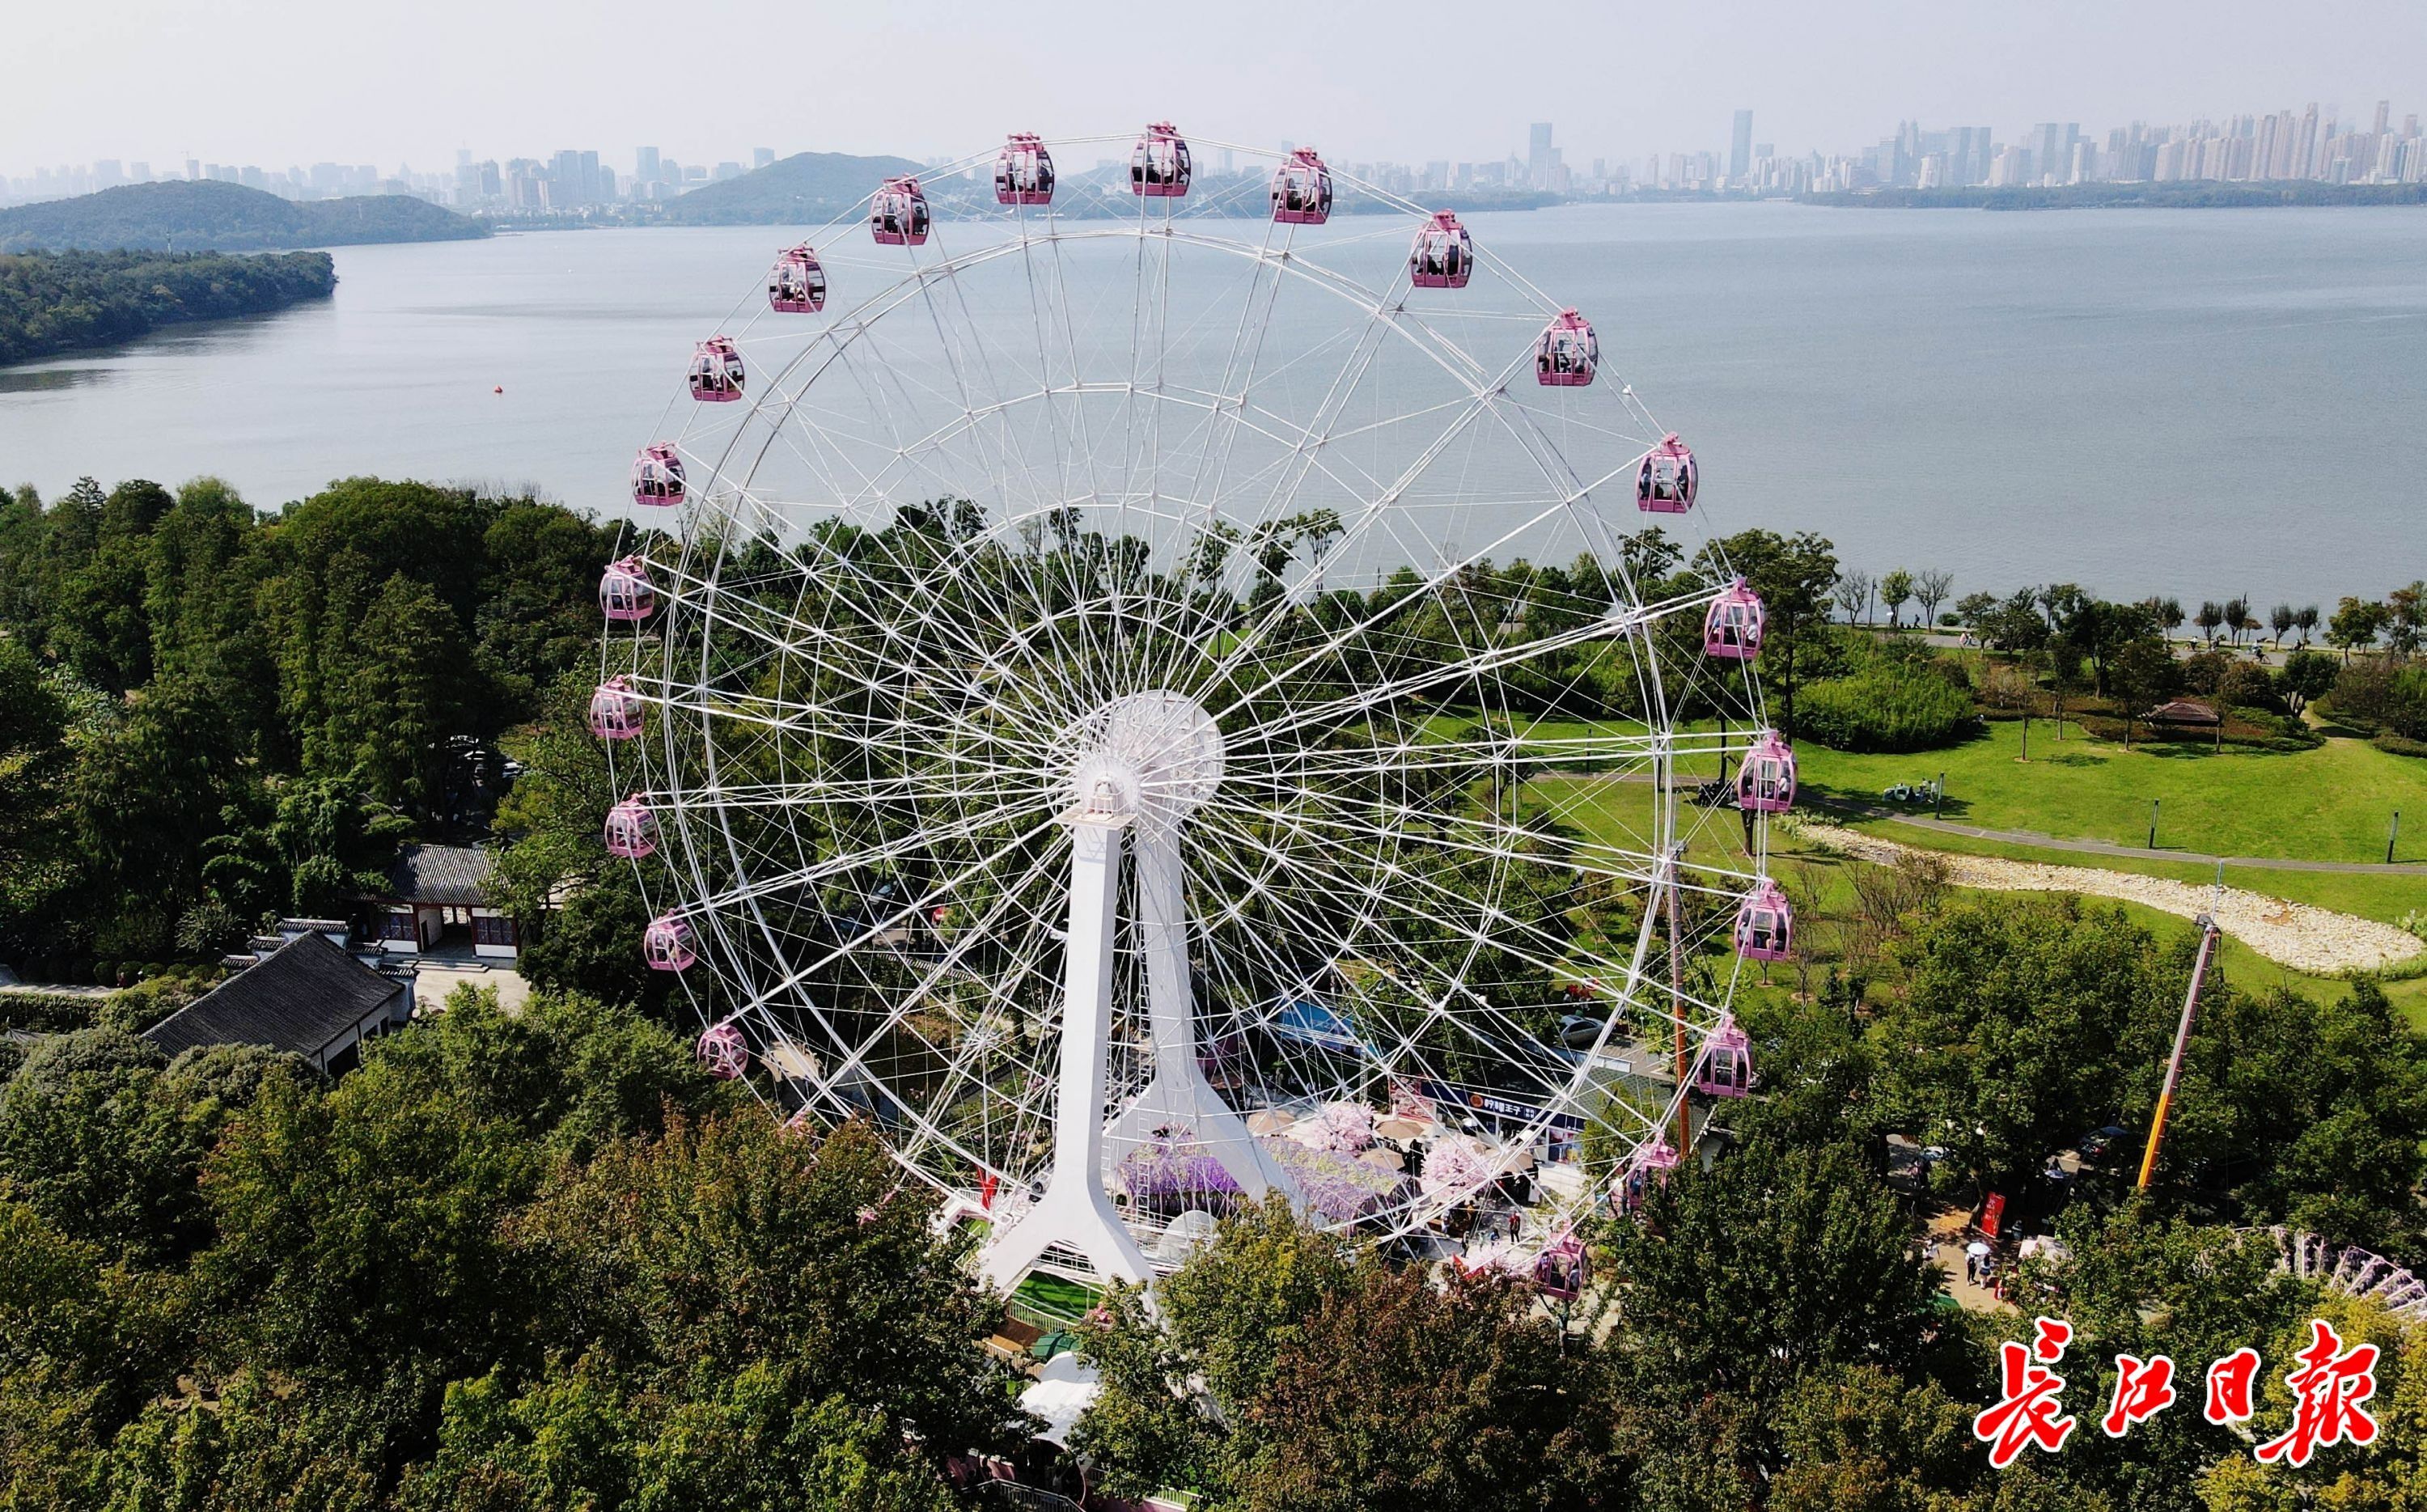 2020年10月1日国庆节,网红打卡地东湖之眼摩天轮吸引了众多游客前来